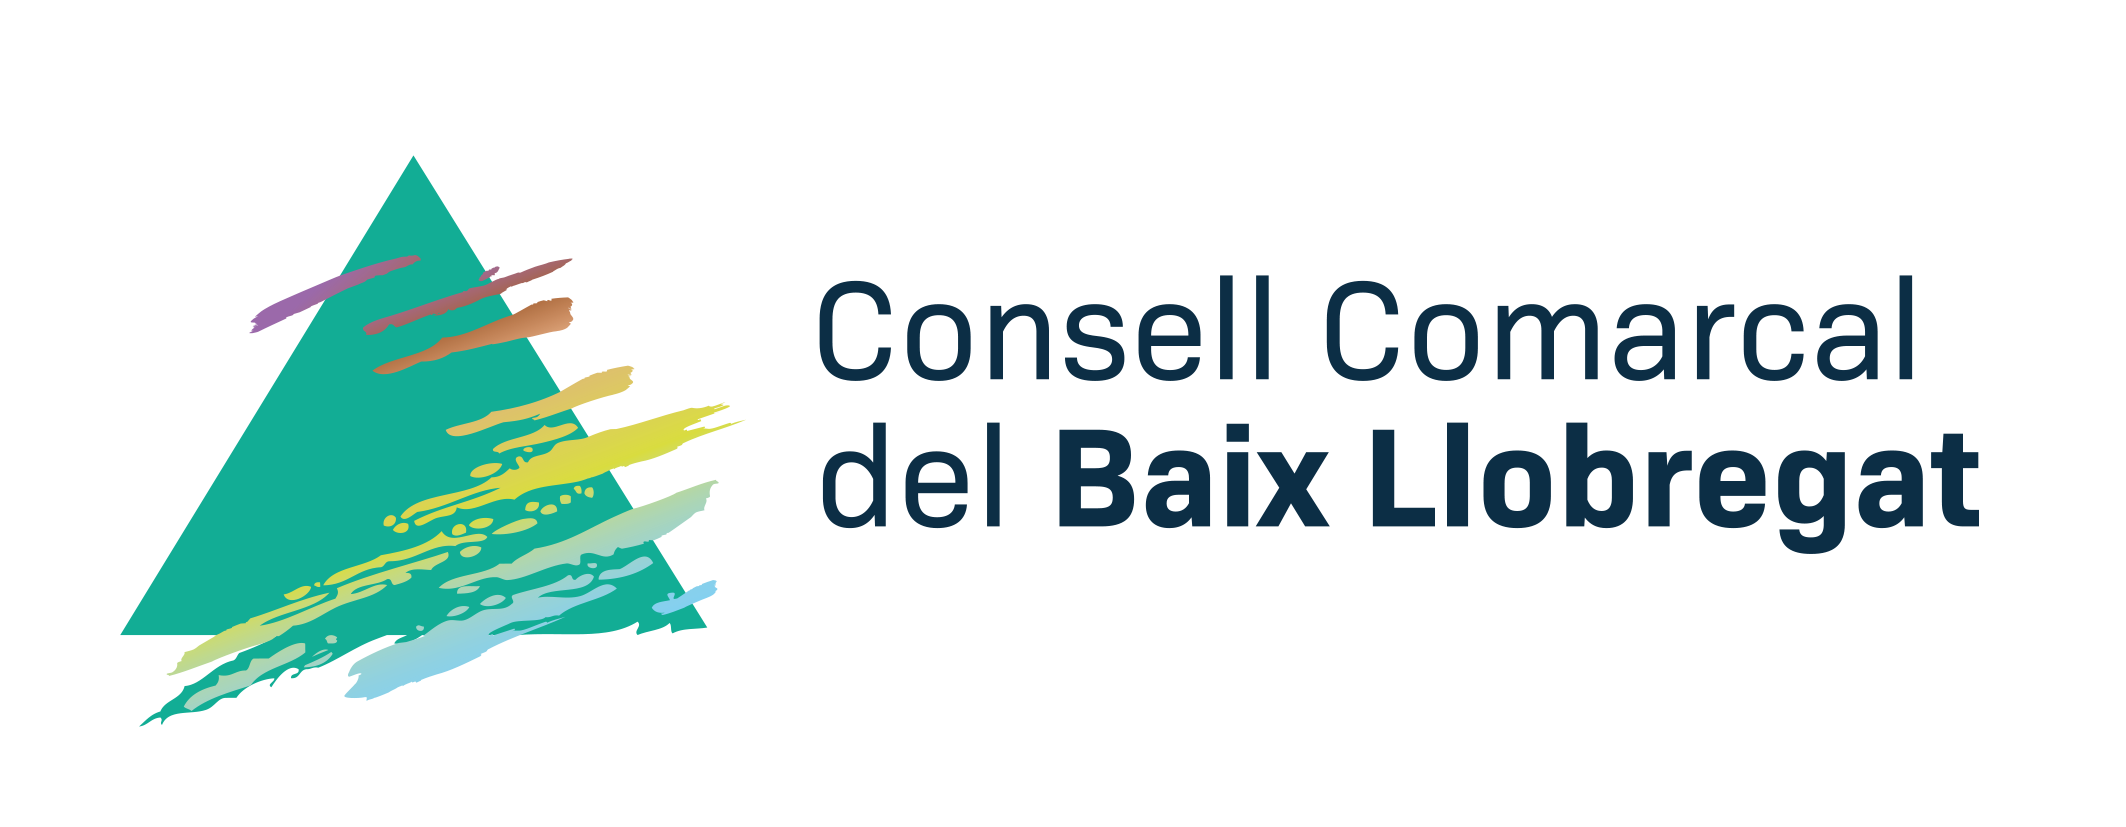 Acta Digital - Consell Comarcal Del Baix Llobregat